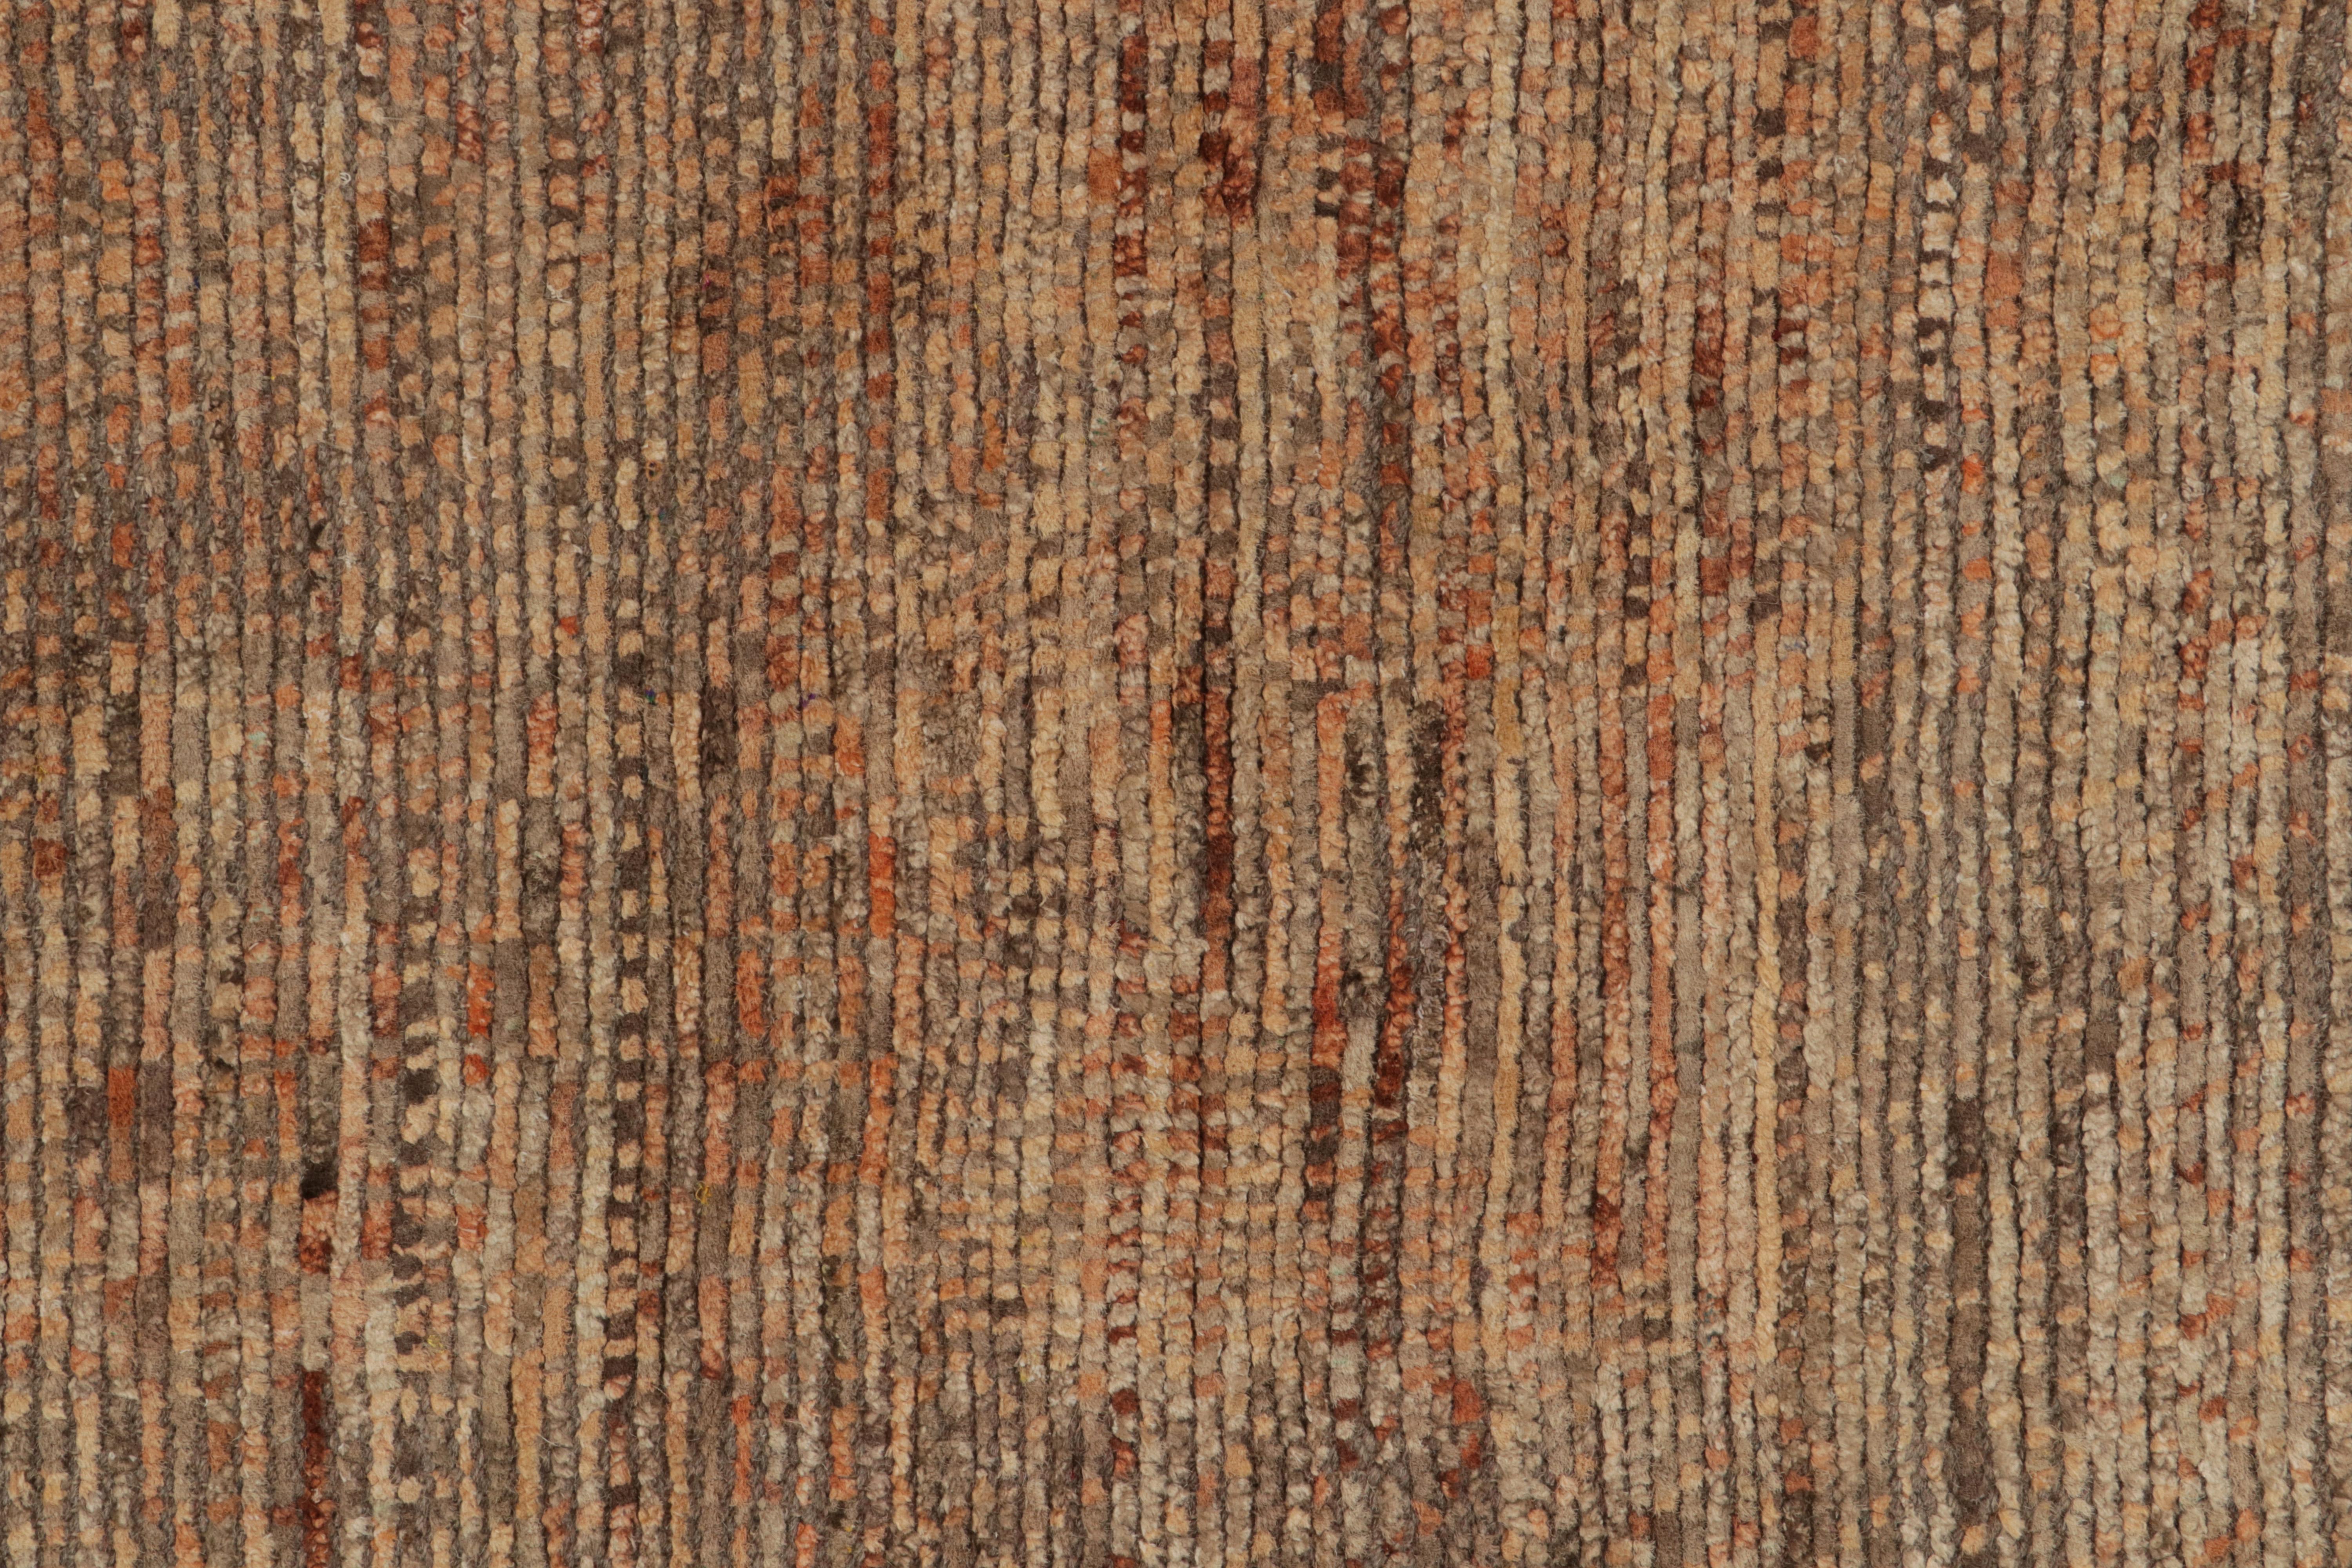 Rug & Kilim's Modern Textural Rug in Beige-Braun und Orange Striae Patterns